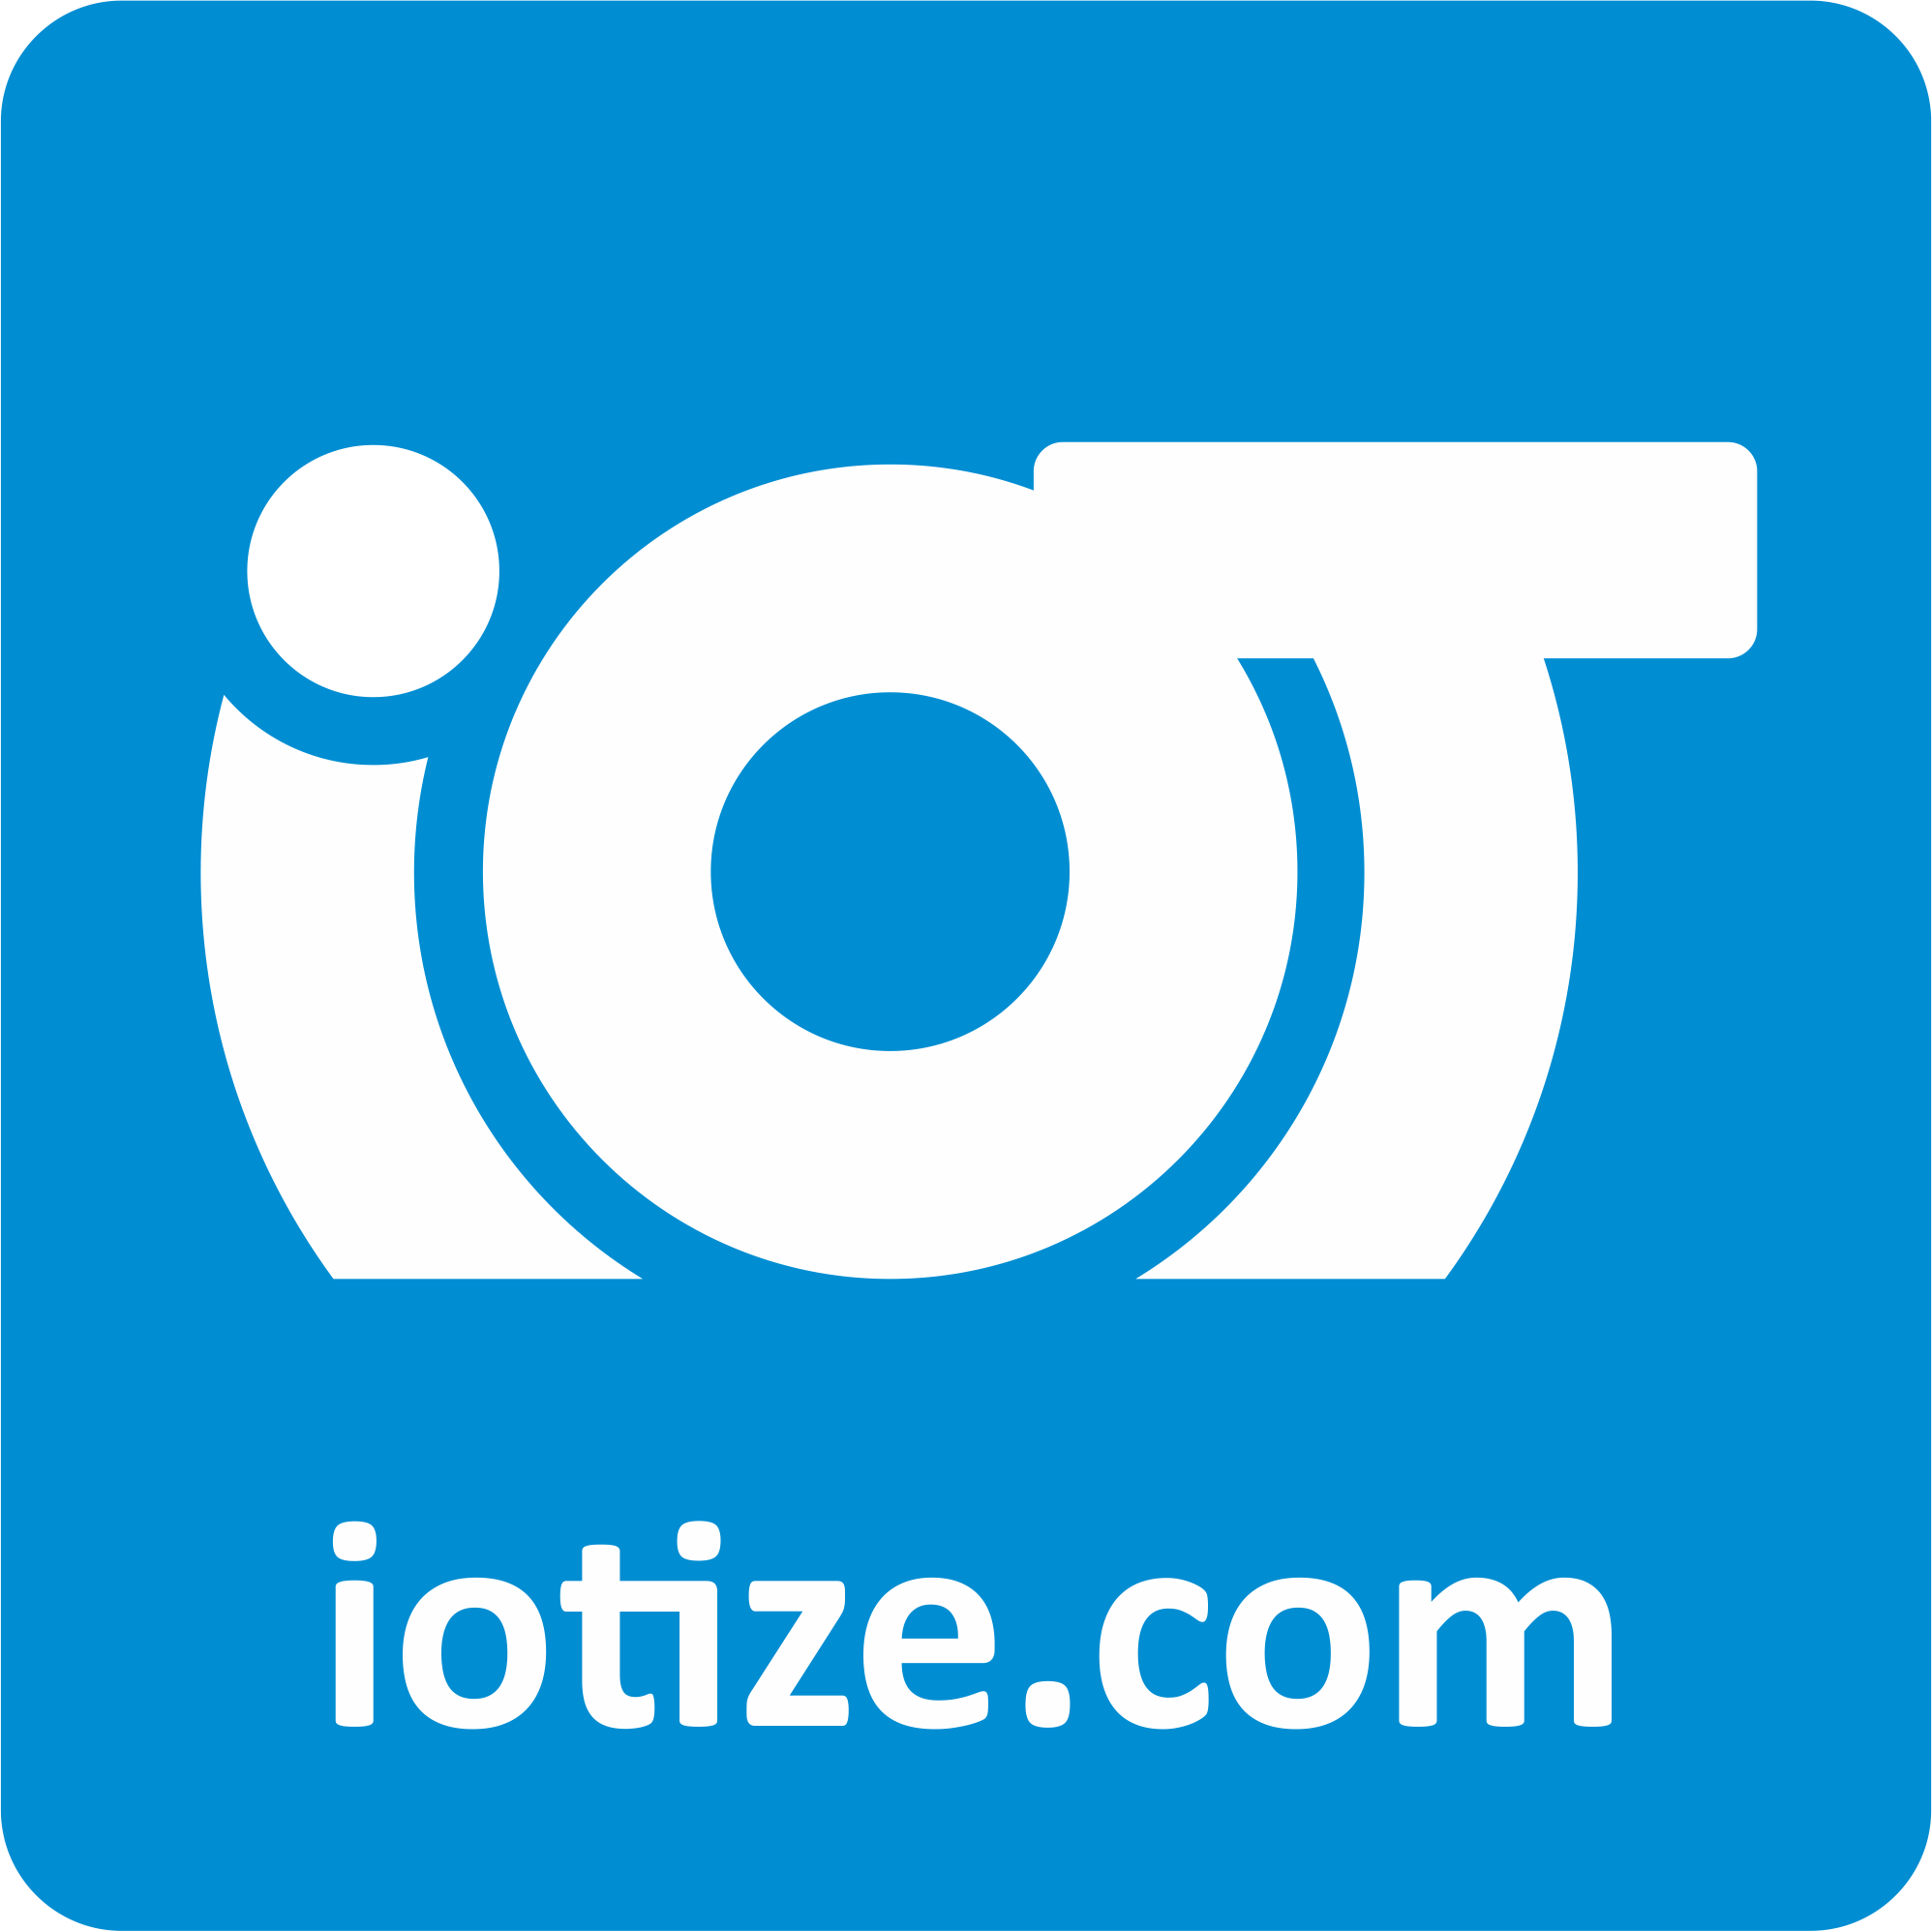 Visit iotize.com